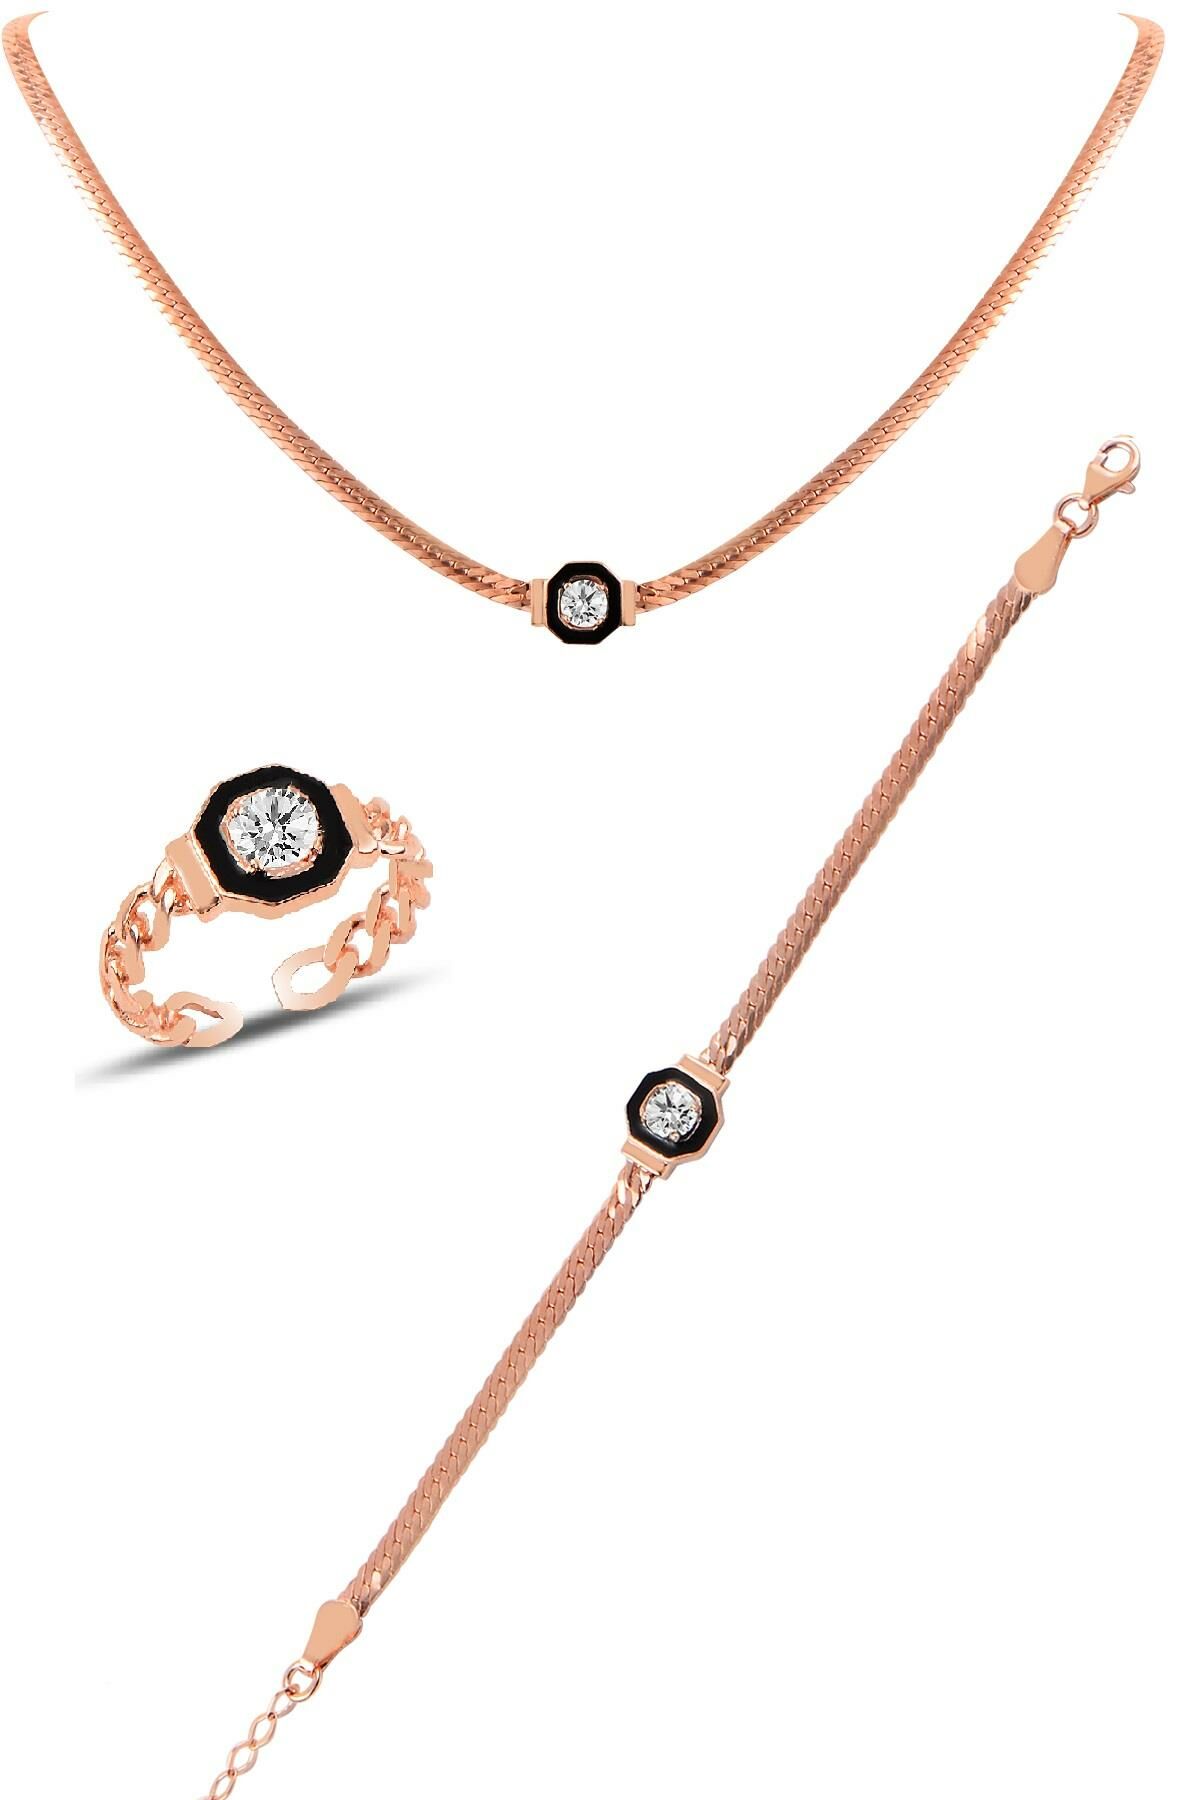 Silver rose Çağla Şikel necklace, bracelet and ring silver set